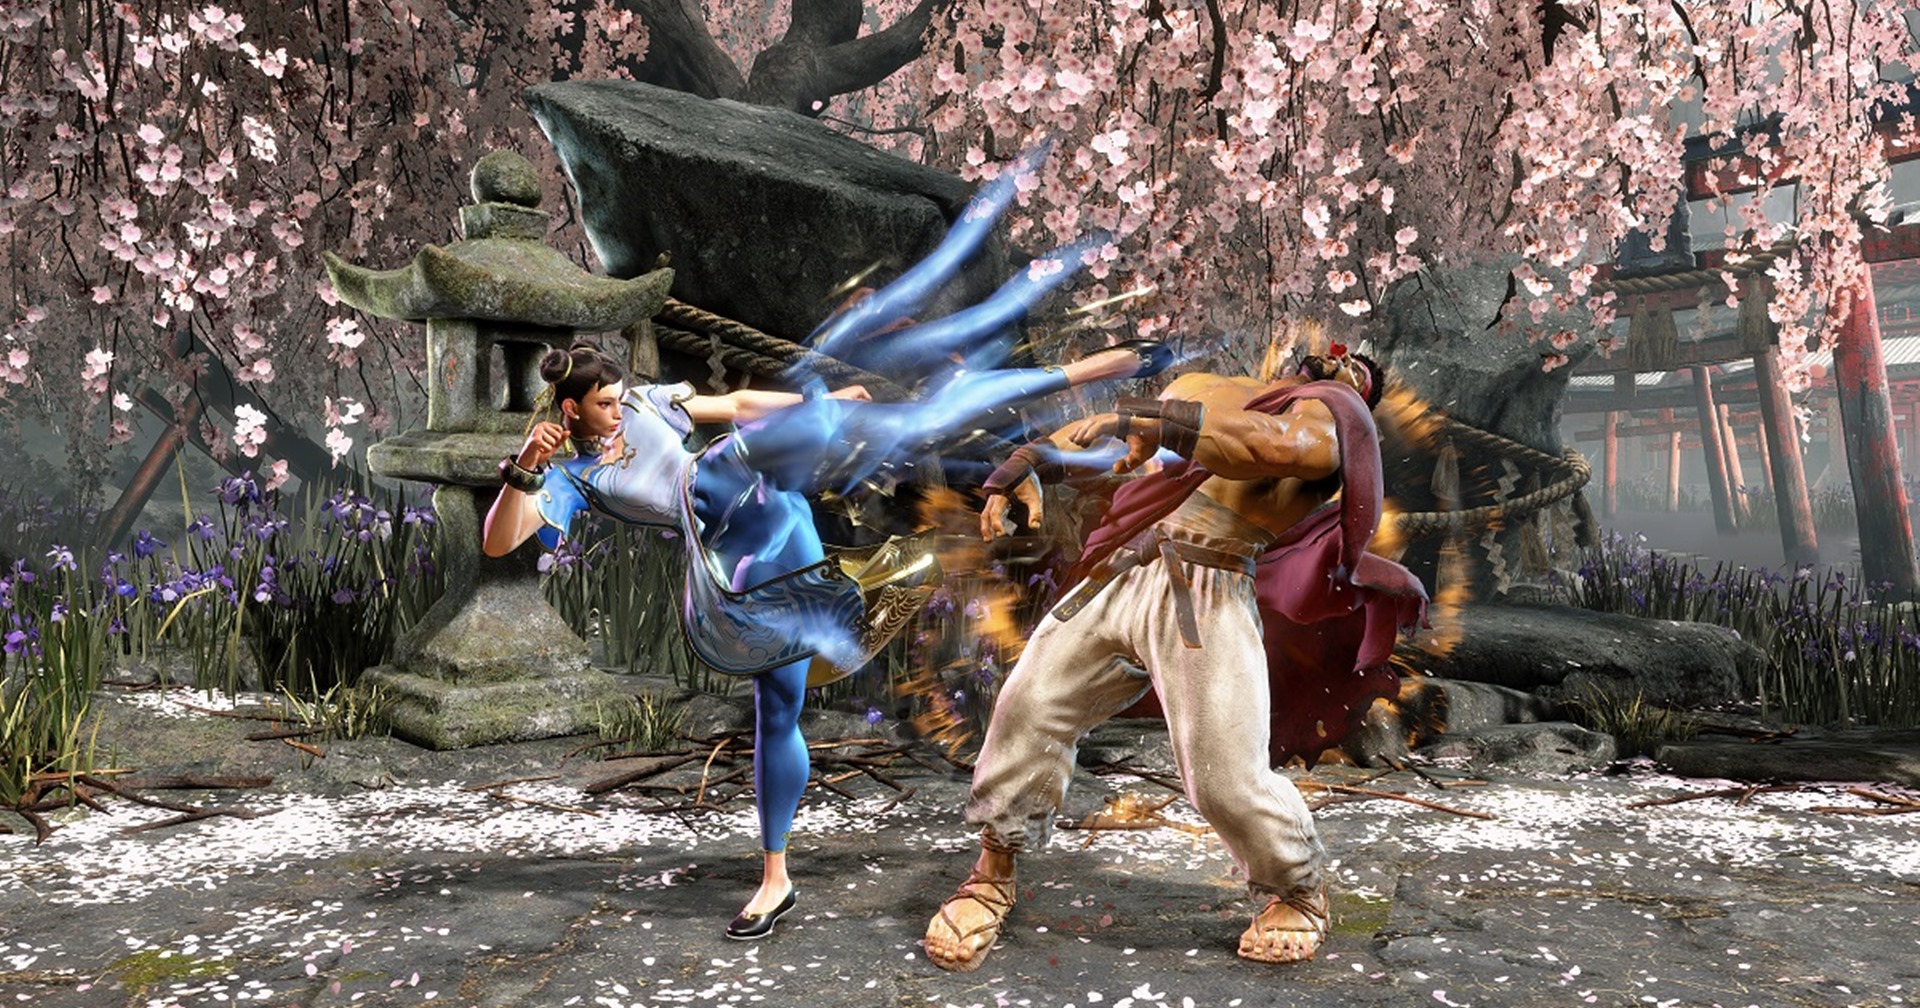 เกม Street Fighter 6 จะมีโหมดที่กดท่าไม้ตายได้ง่ายสำหรับมือใหม่